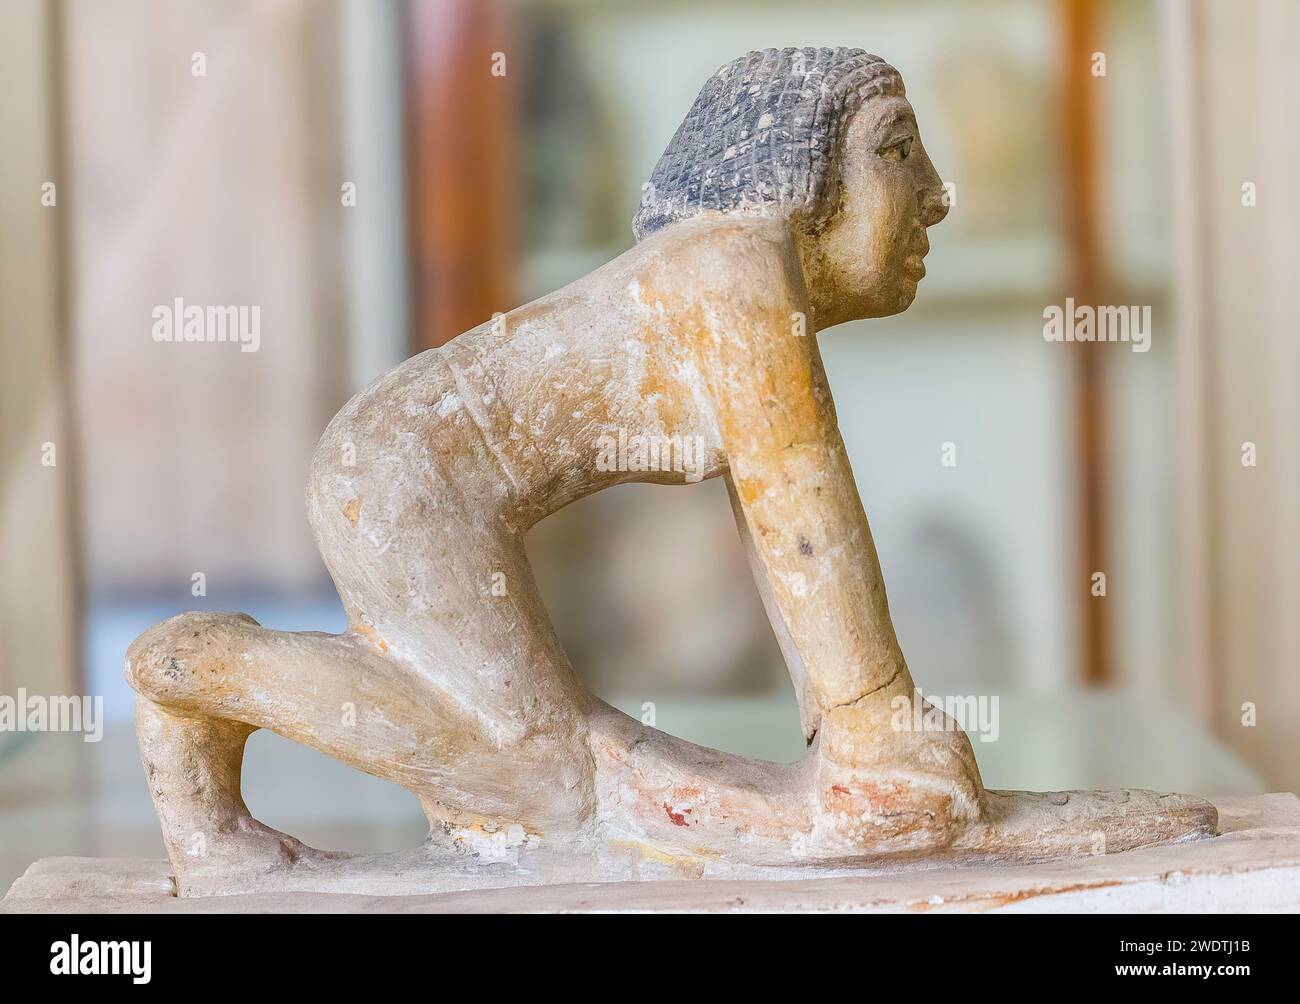 Ägyptisches Museum Kairo, Modellstatuette eines Dieners, der Körner mit einem runden Stein zerquetscht. Stockfoto